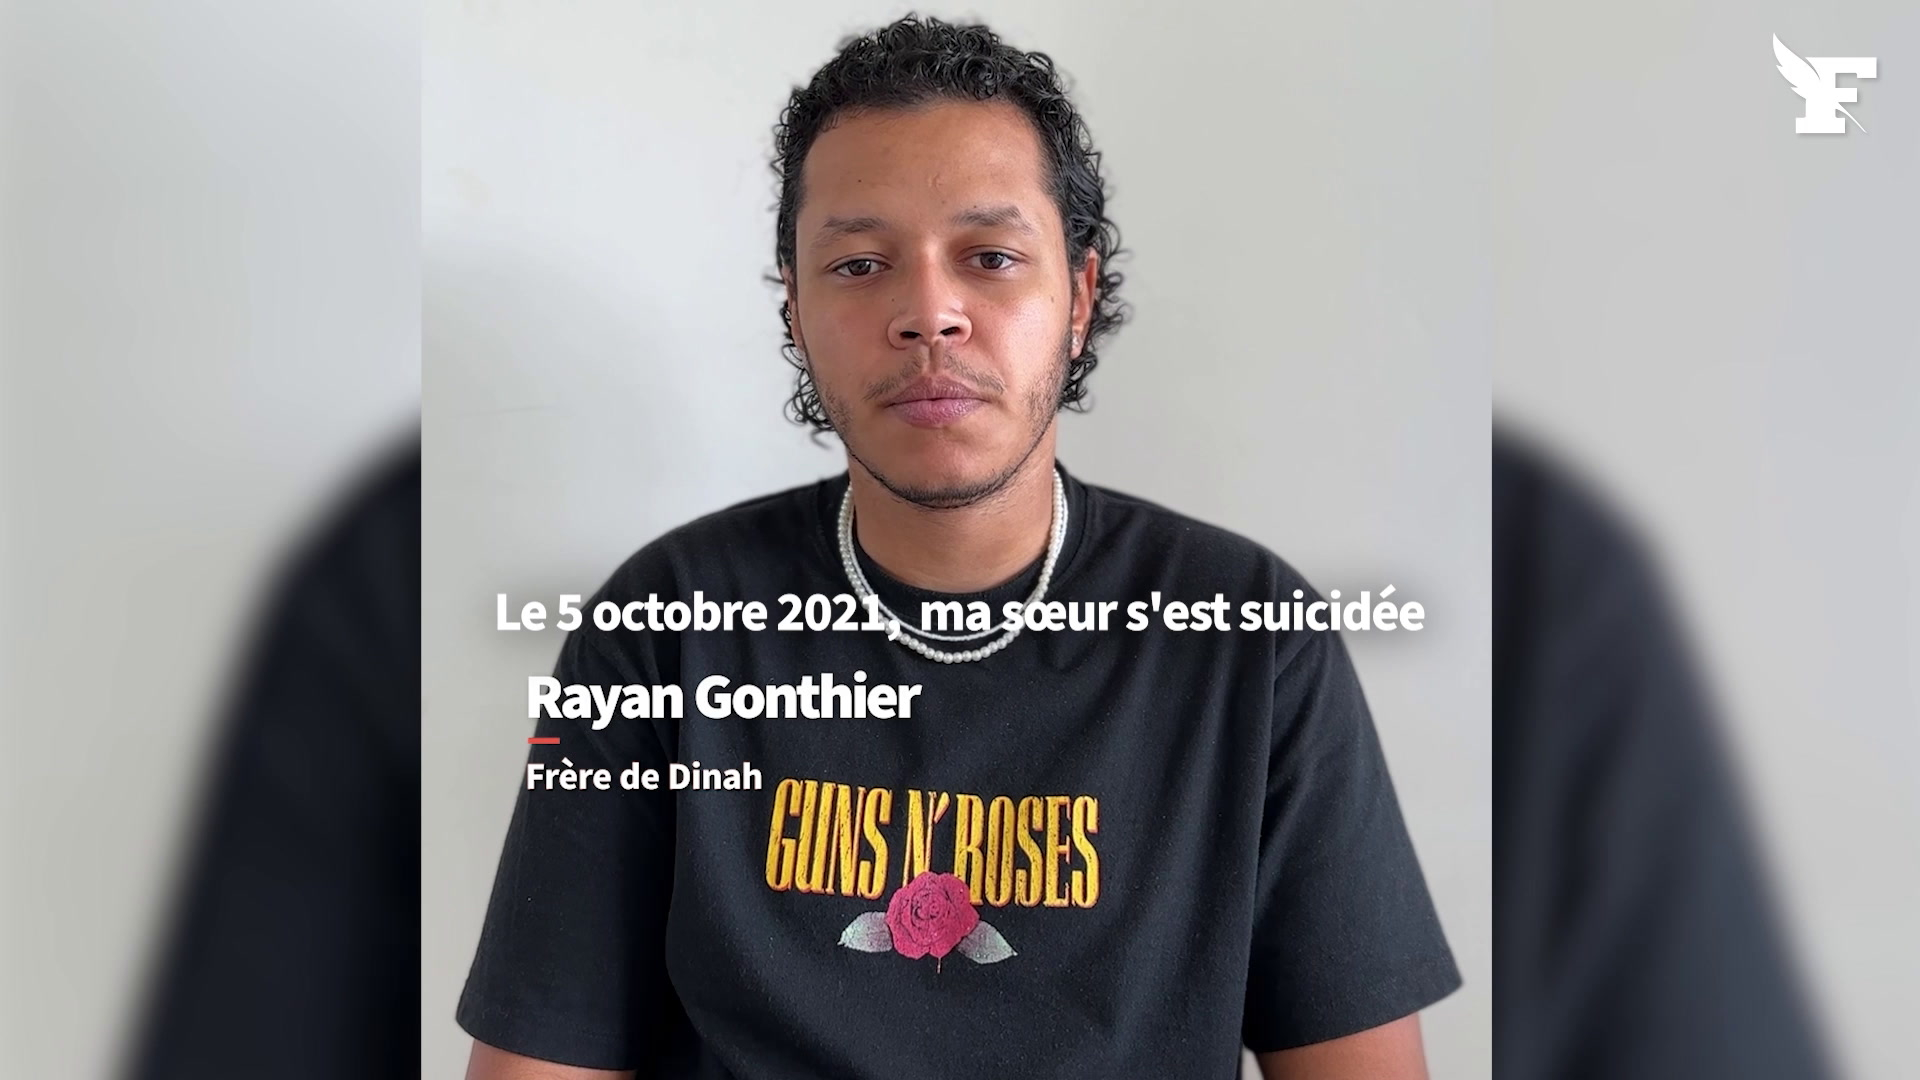 Harcèlement scolaire: le bouleversant témoignage de Rayan, deux ans après le suicide de sa sœur